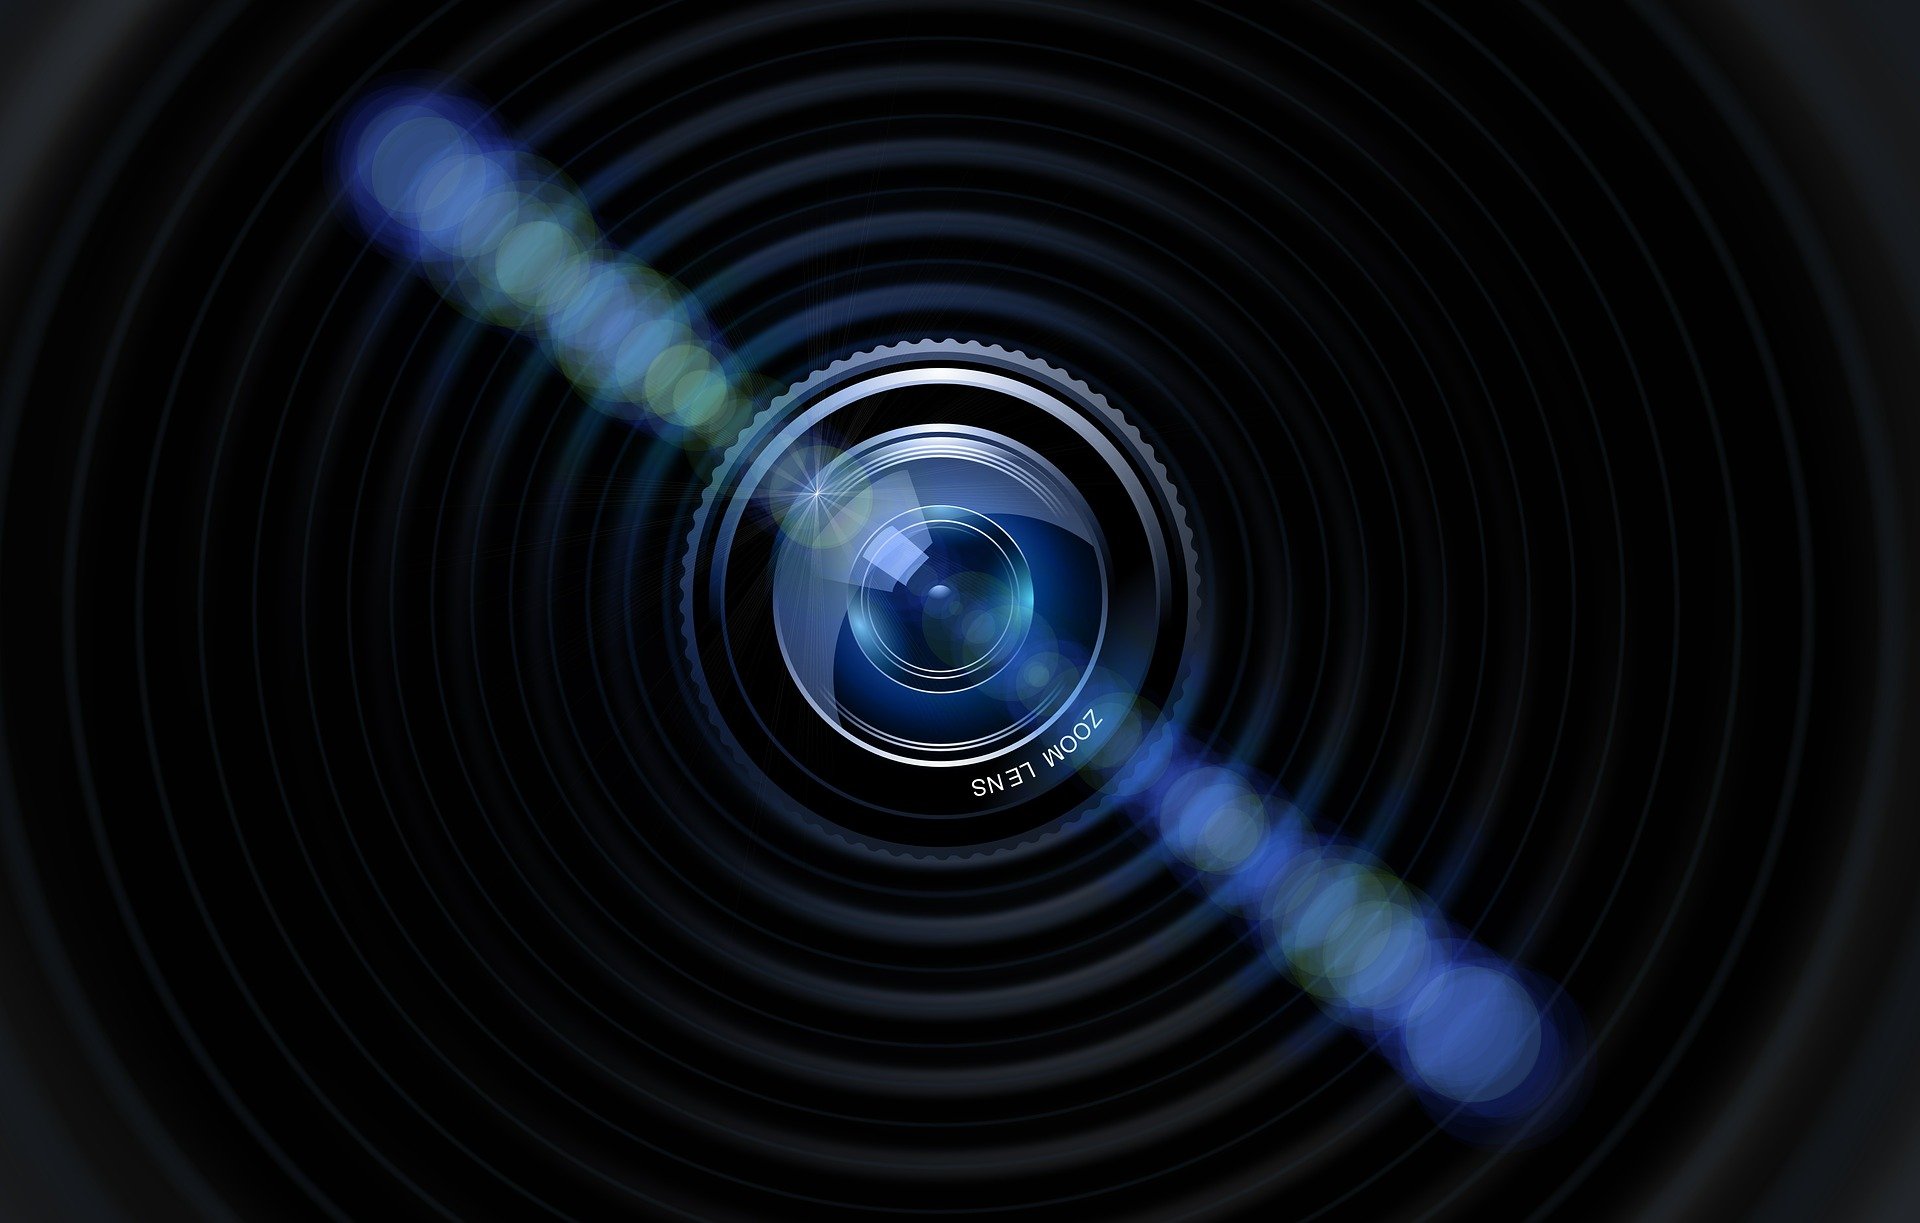 Detall d'una lent d'una càmera de fotos. Font: Gerd Altmann (Pixabay)